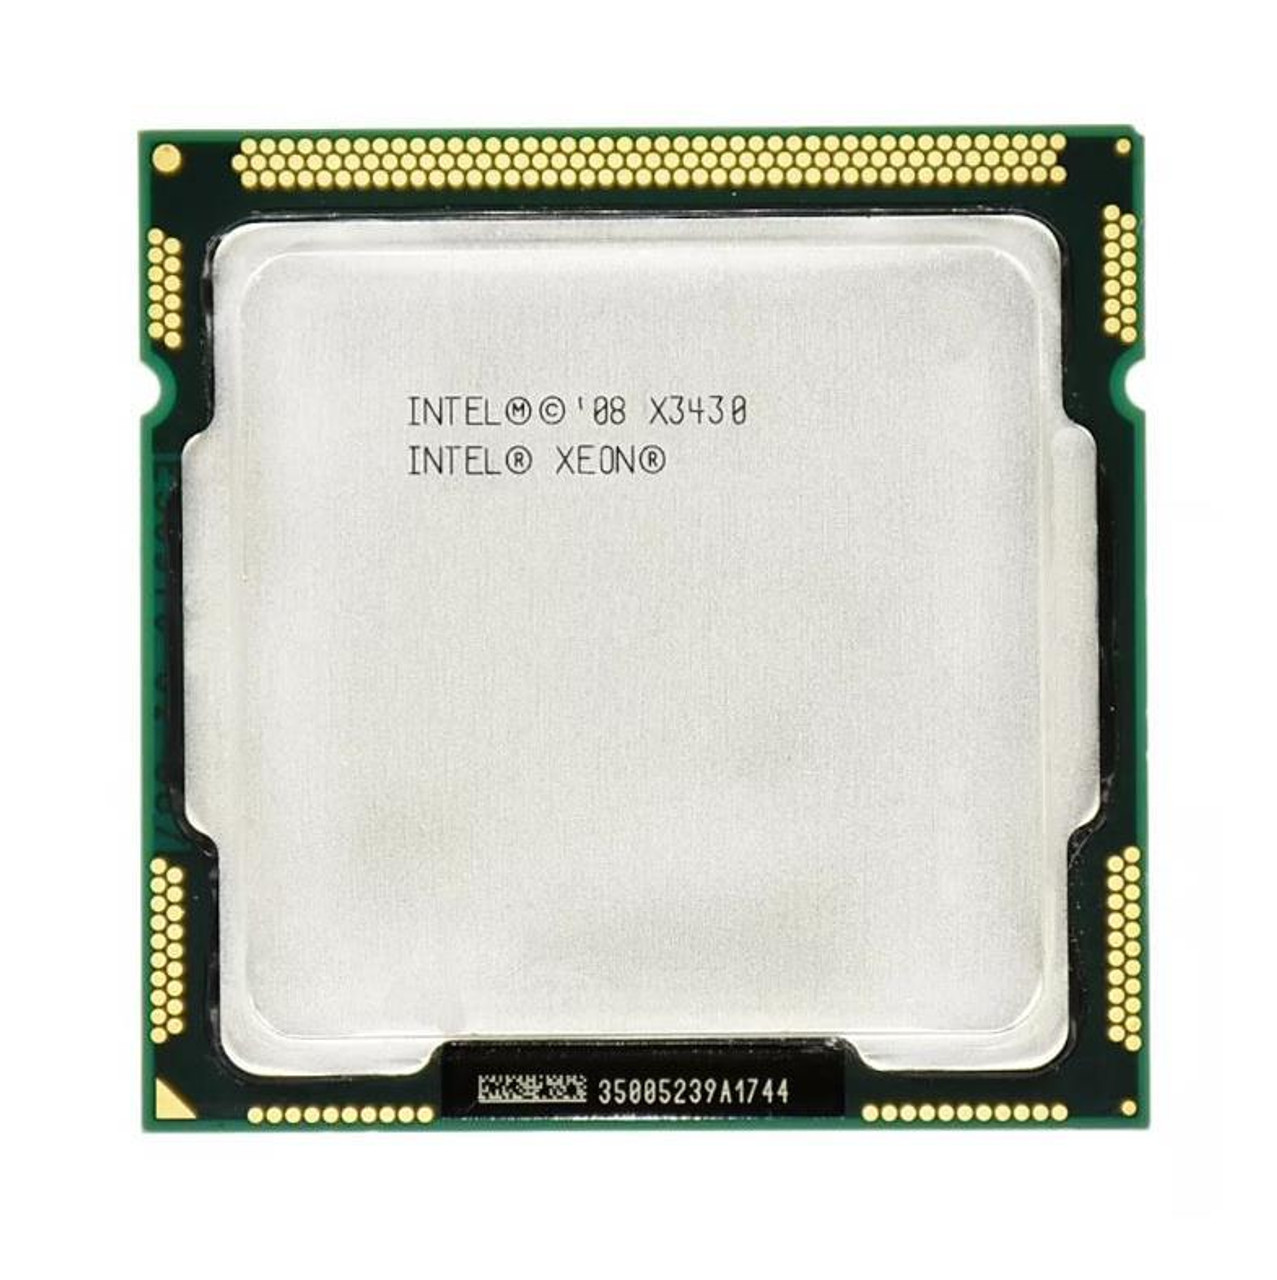 Dell 2.40GHz 2.50GT/s DMI 8MB L3 Cache Intel Xeon X3430 Quad-Core Processor Upgrade